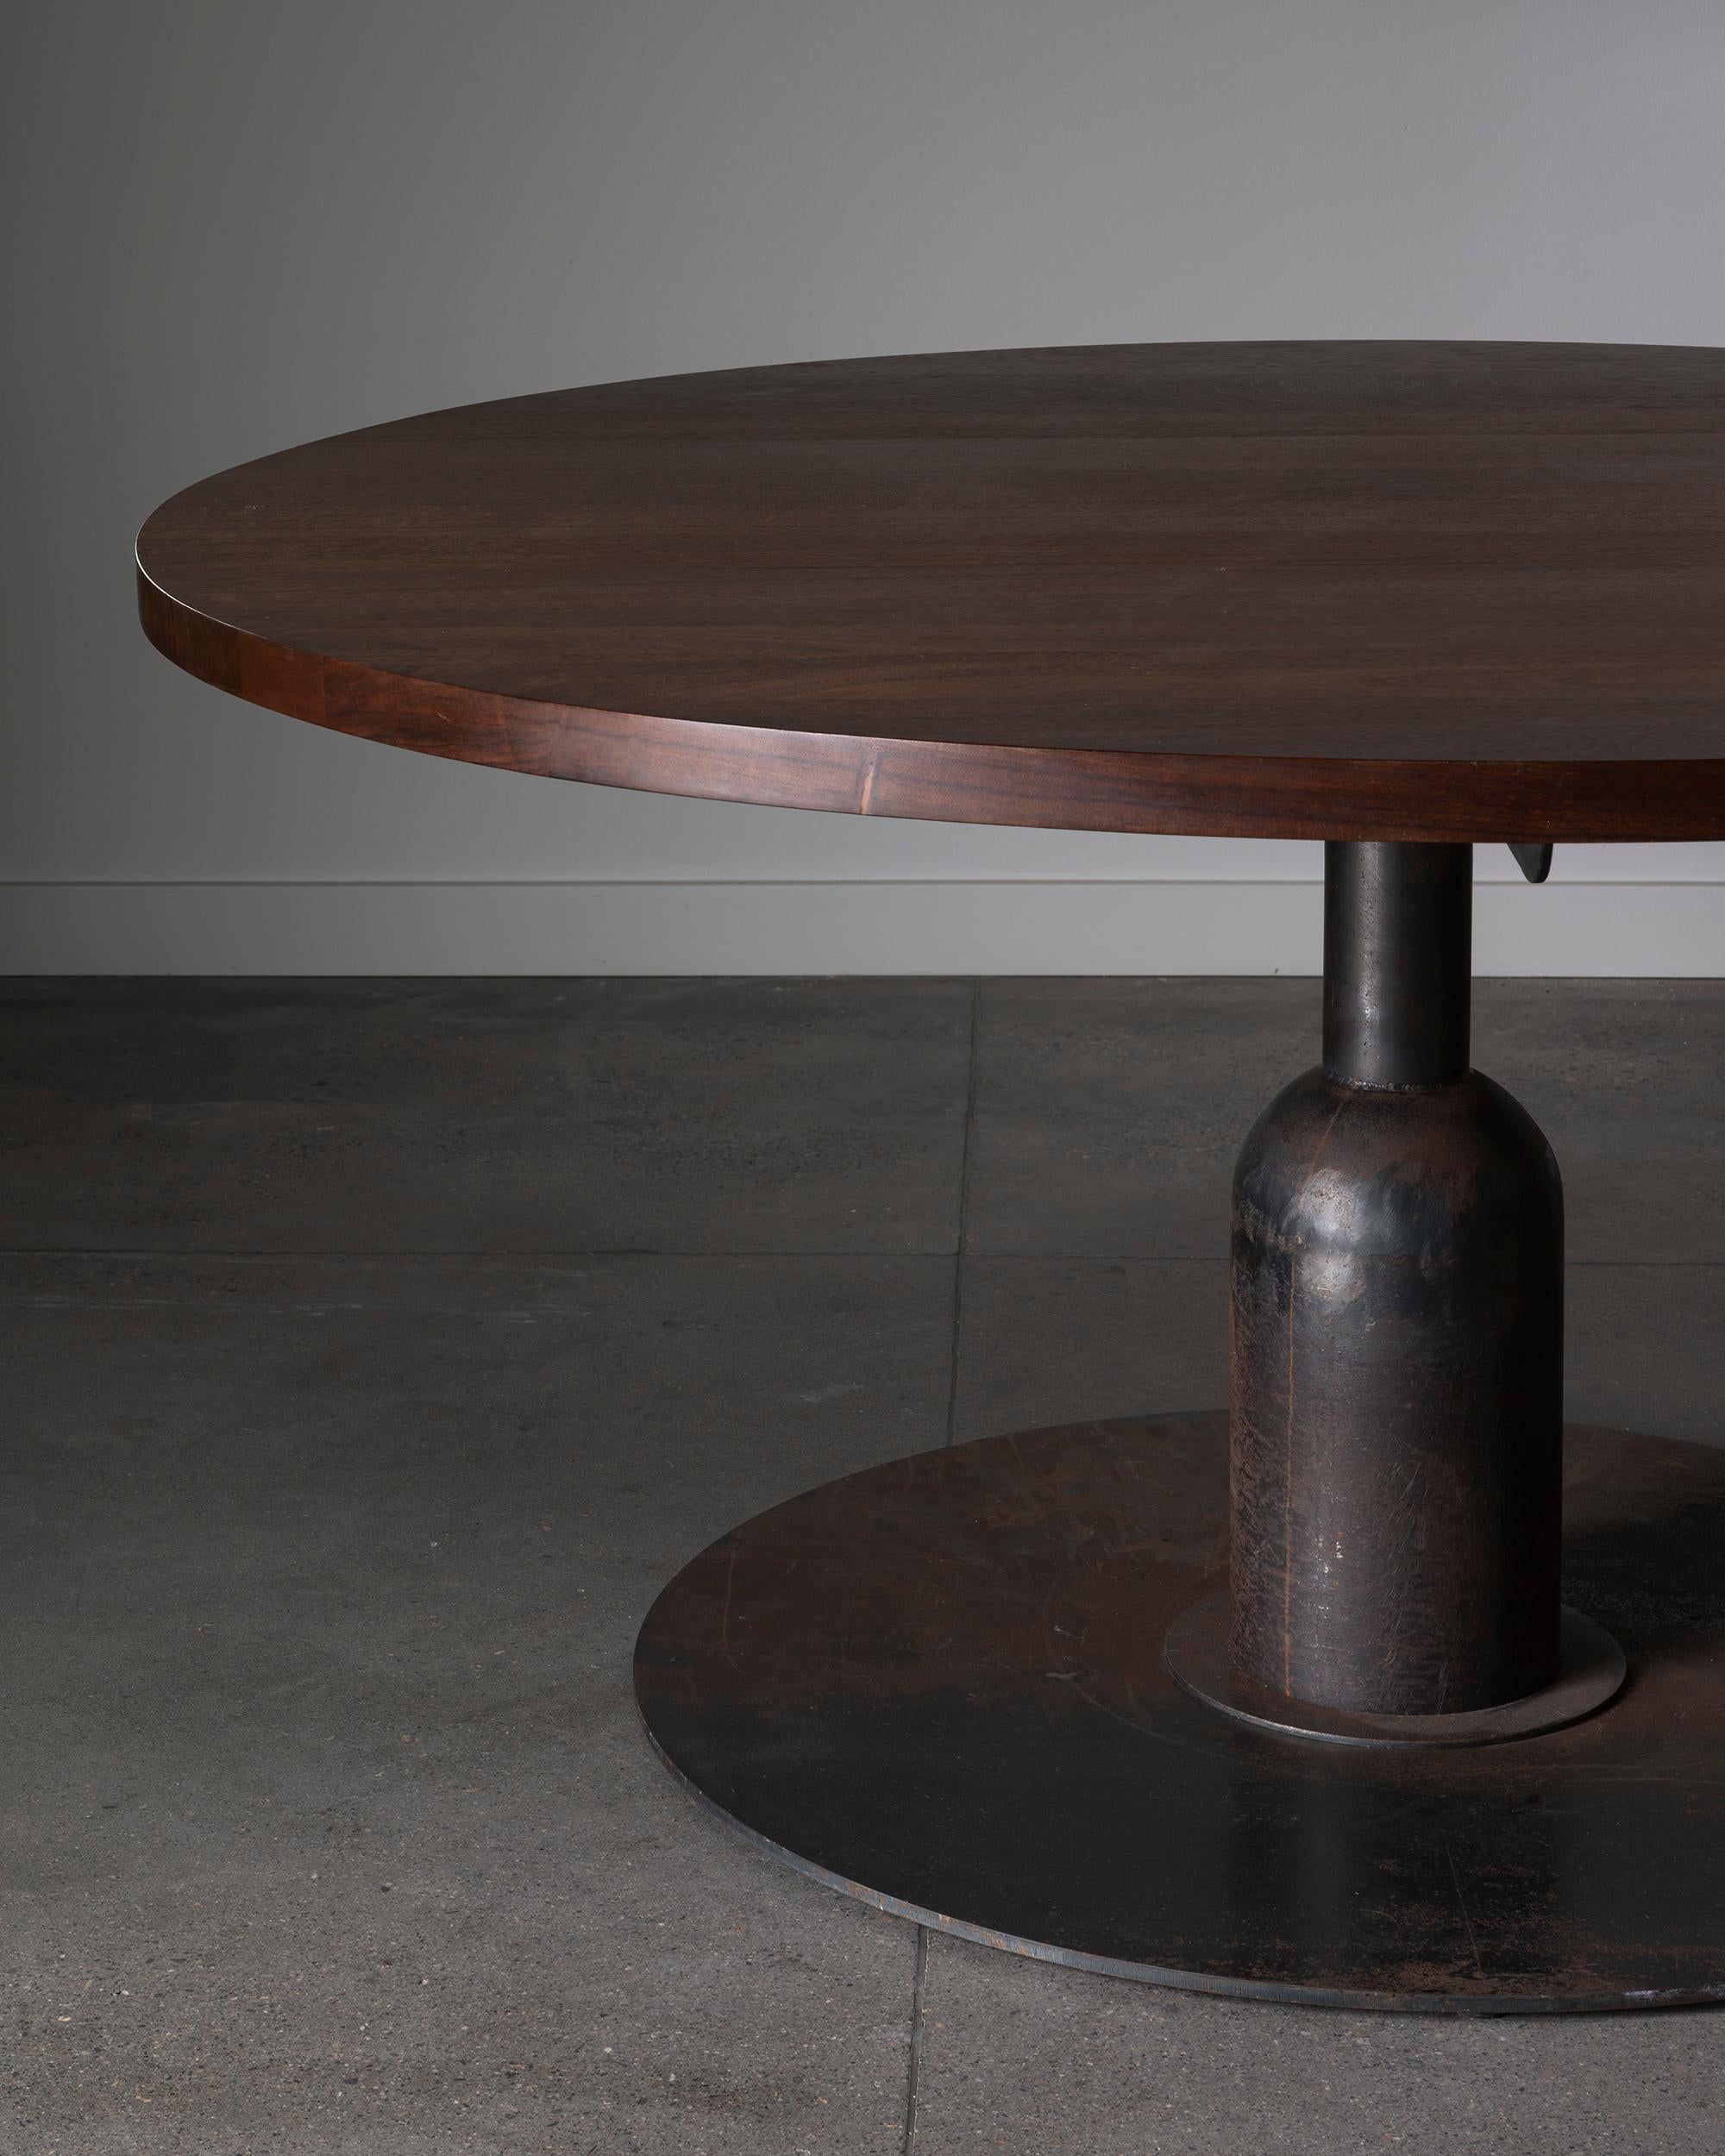 Table de salle à manger brutaliste française des années 1950-60 avec base en fer et plateau en bois. D'une taille inhabituelle avec un diamètre de 59 pouces. ca 1950 - 60s France. 